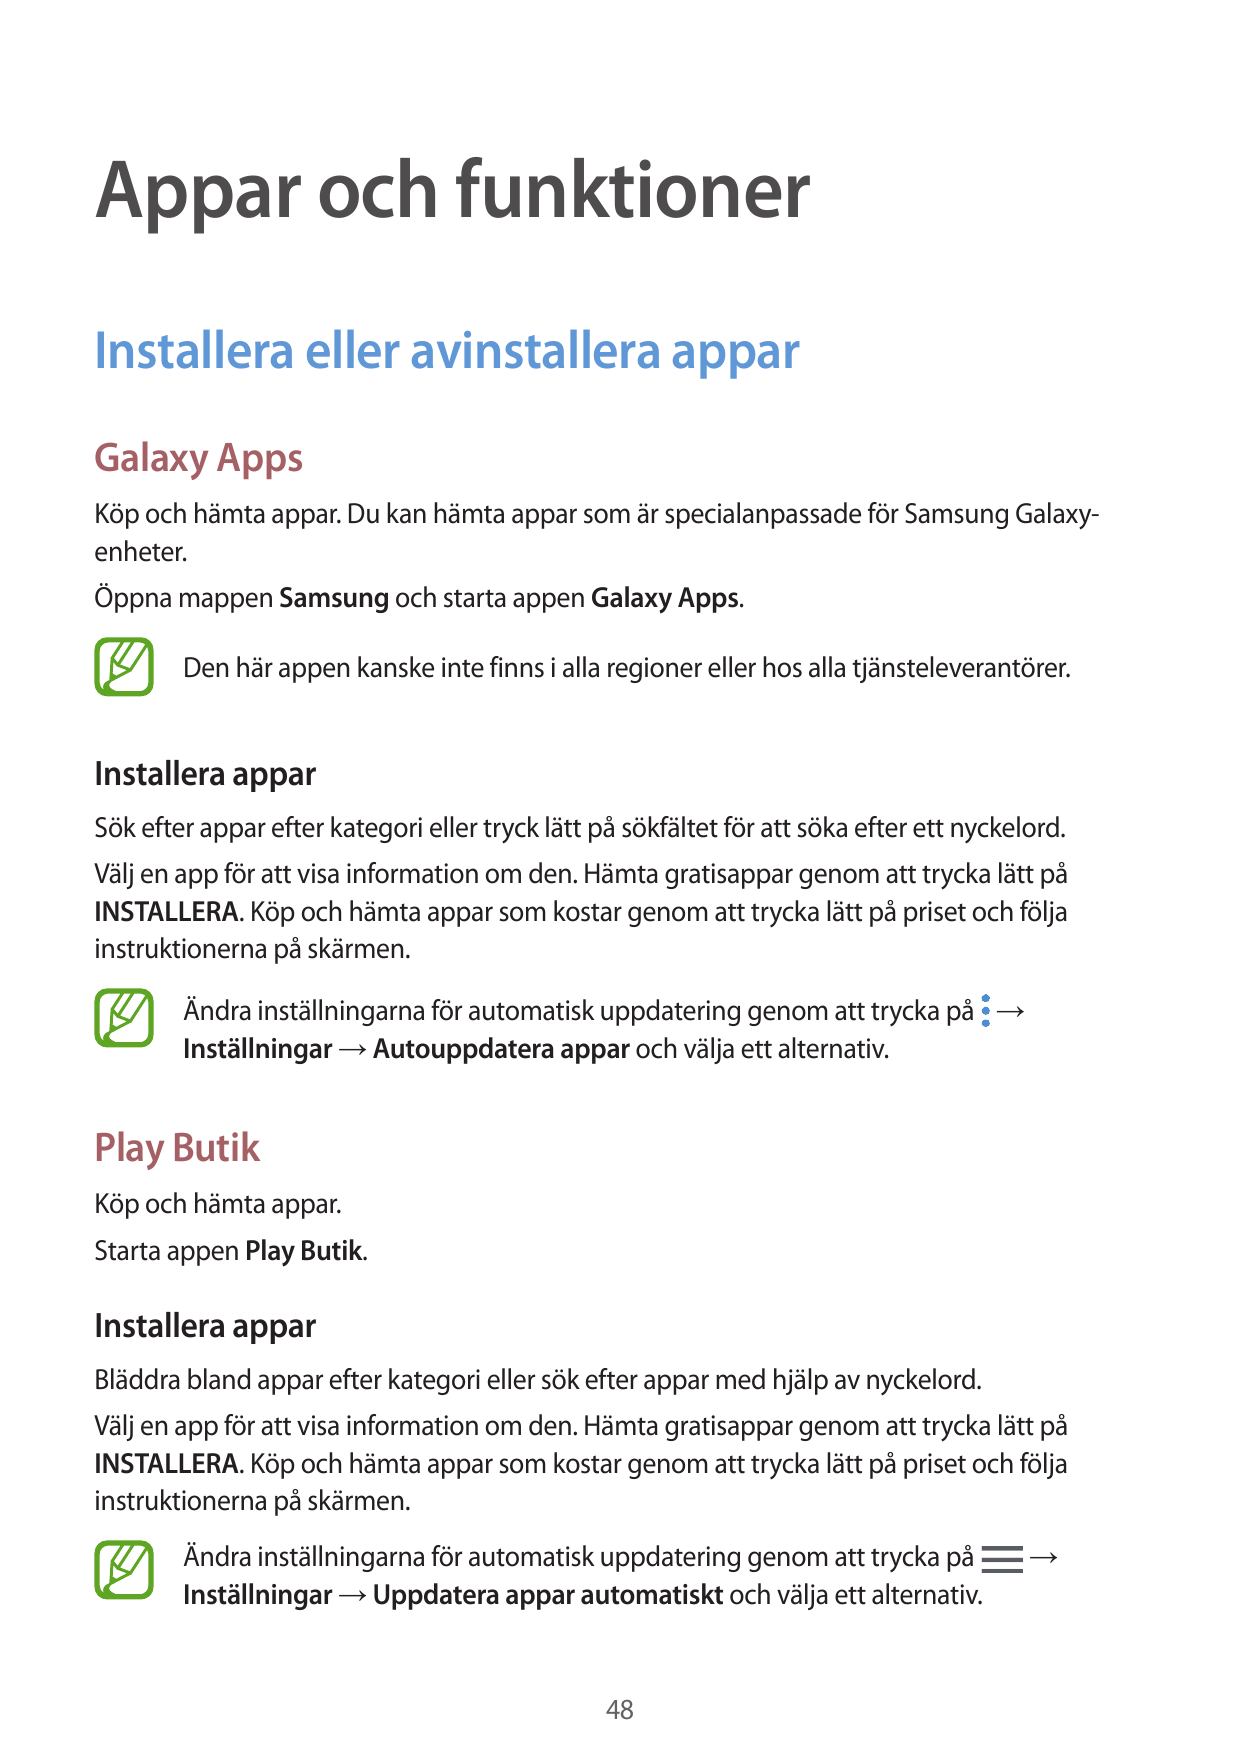 Appar och funktionerInstallera eller avinstallera apparGalaxy AppsKöp och hämta appar. Du kan hämta appar som är specialanpassad